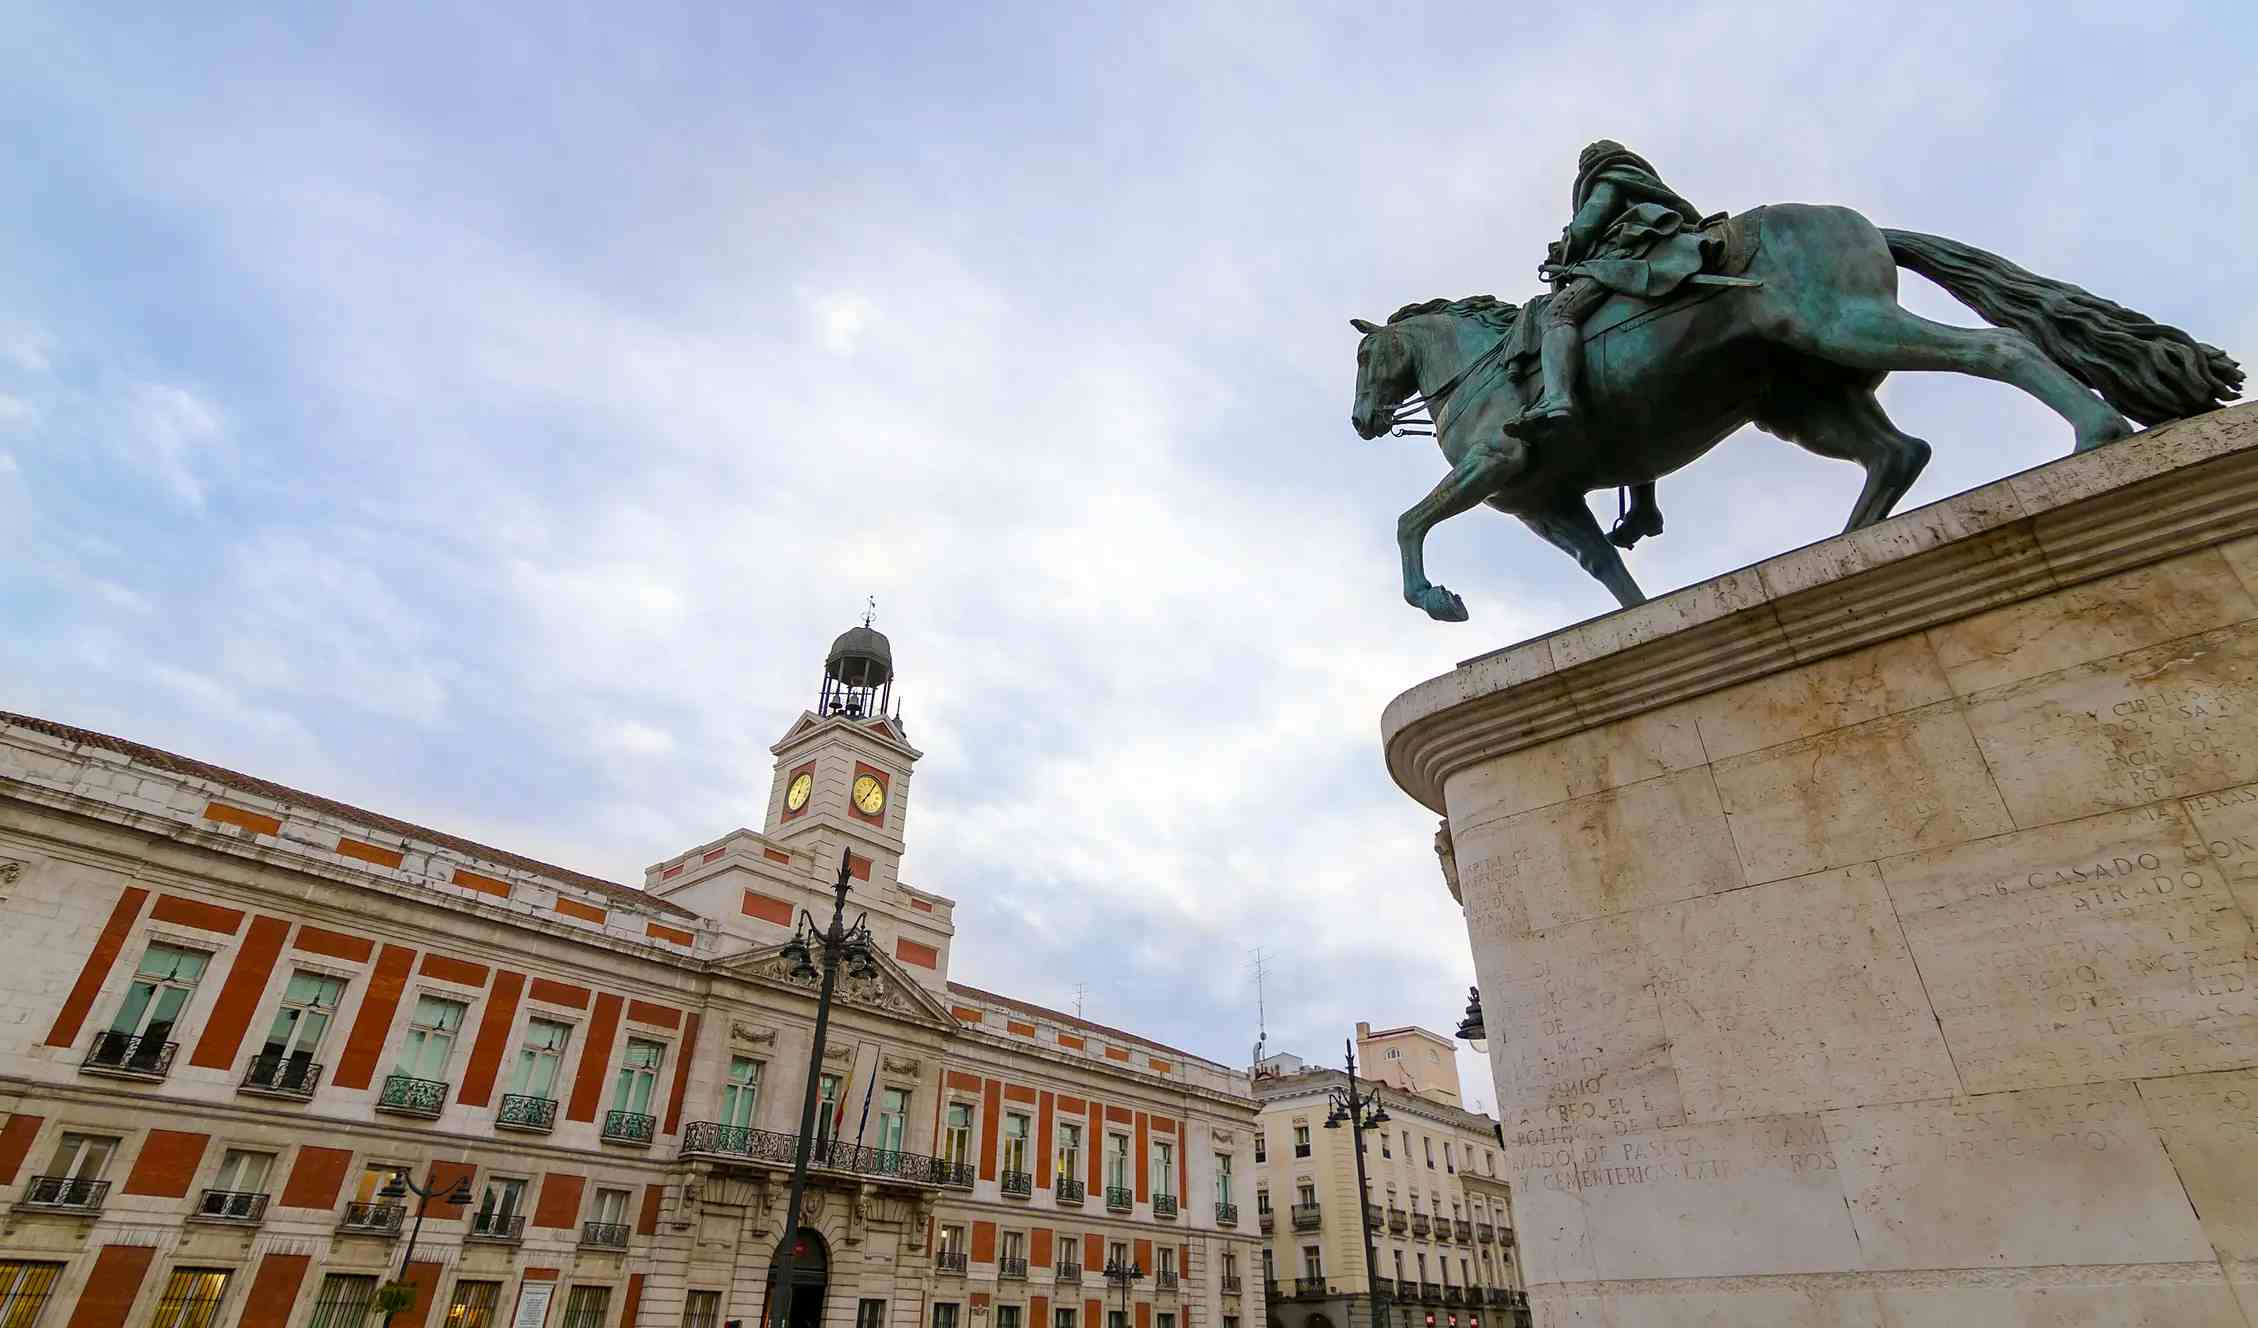 Puerta del Sol image